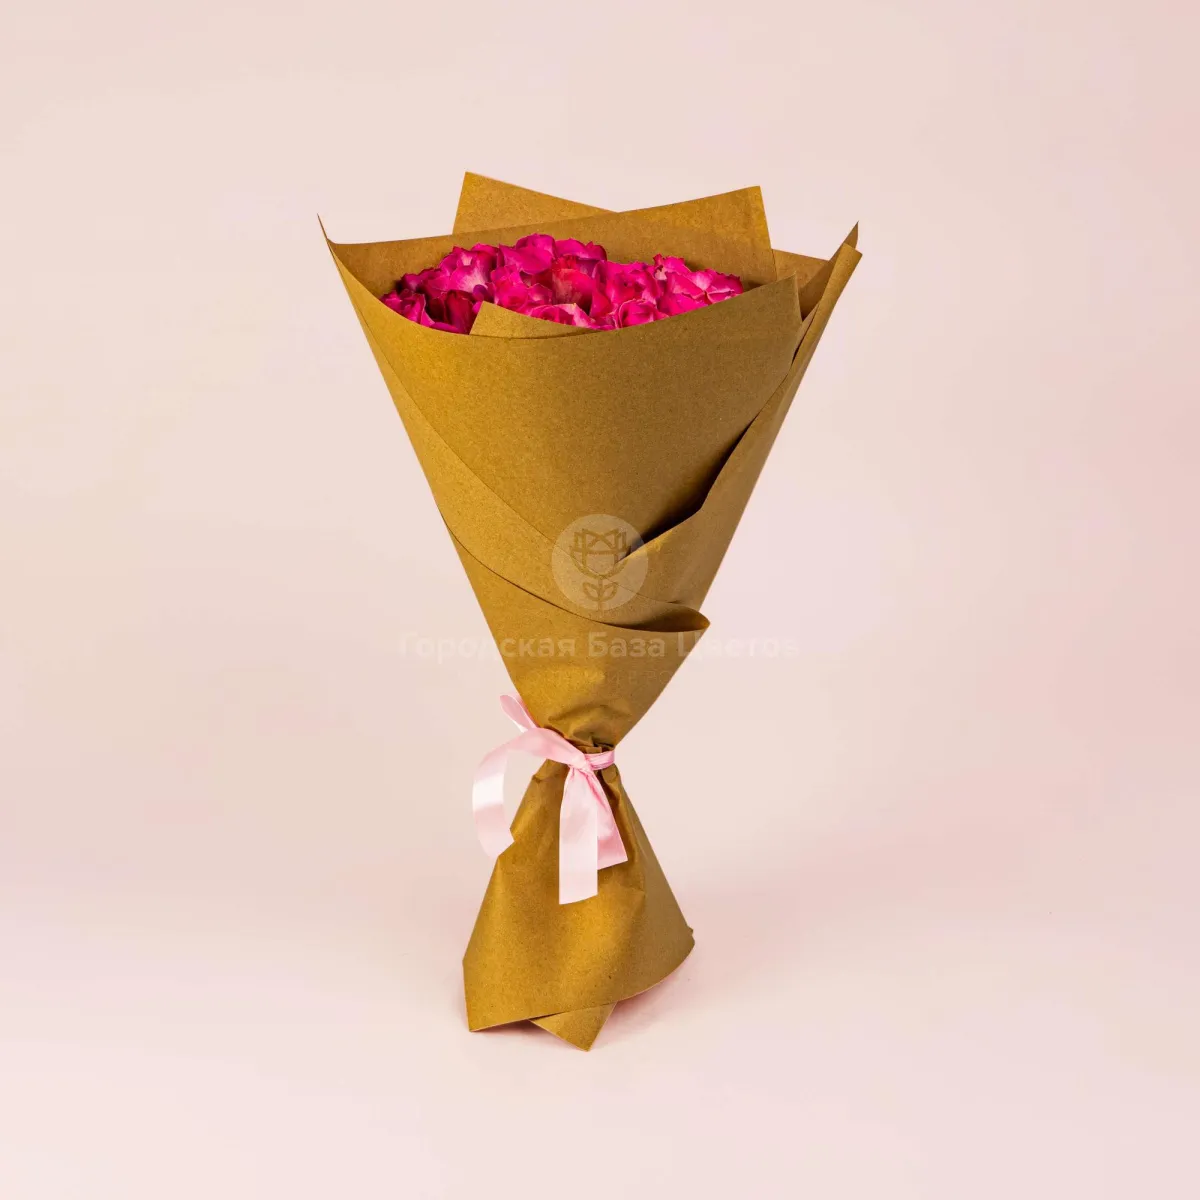 29 ярко-розовых роз (60см)